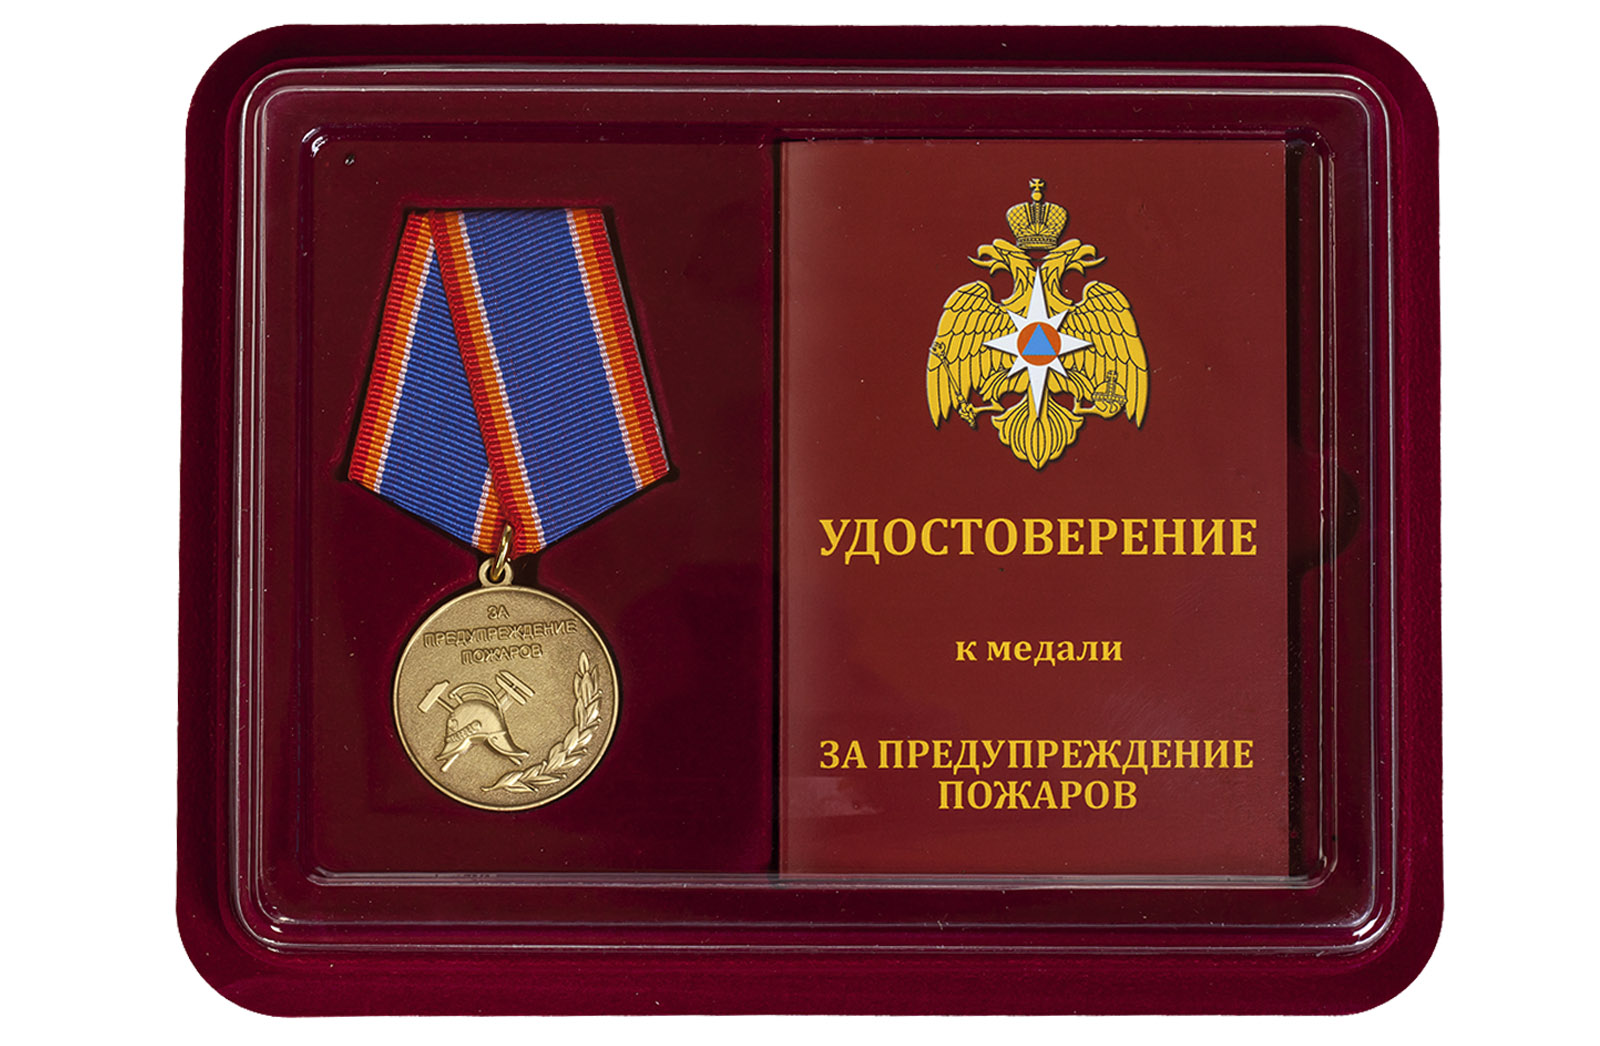 Купить медаль МЧС России За предупреждение пожаров выгодно онлайн